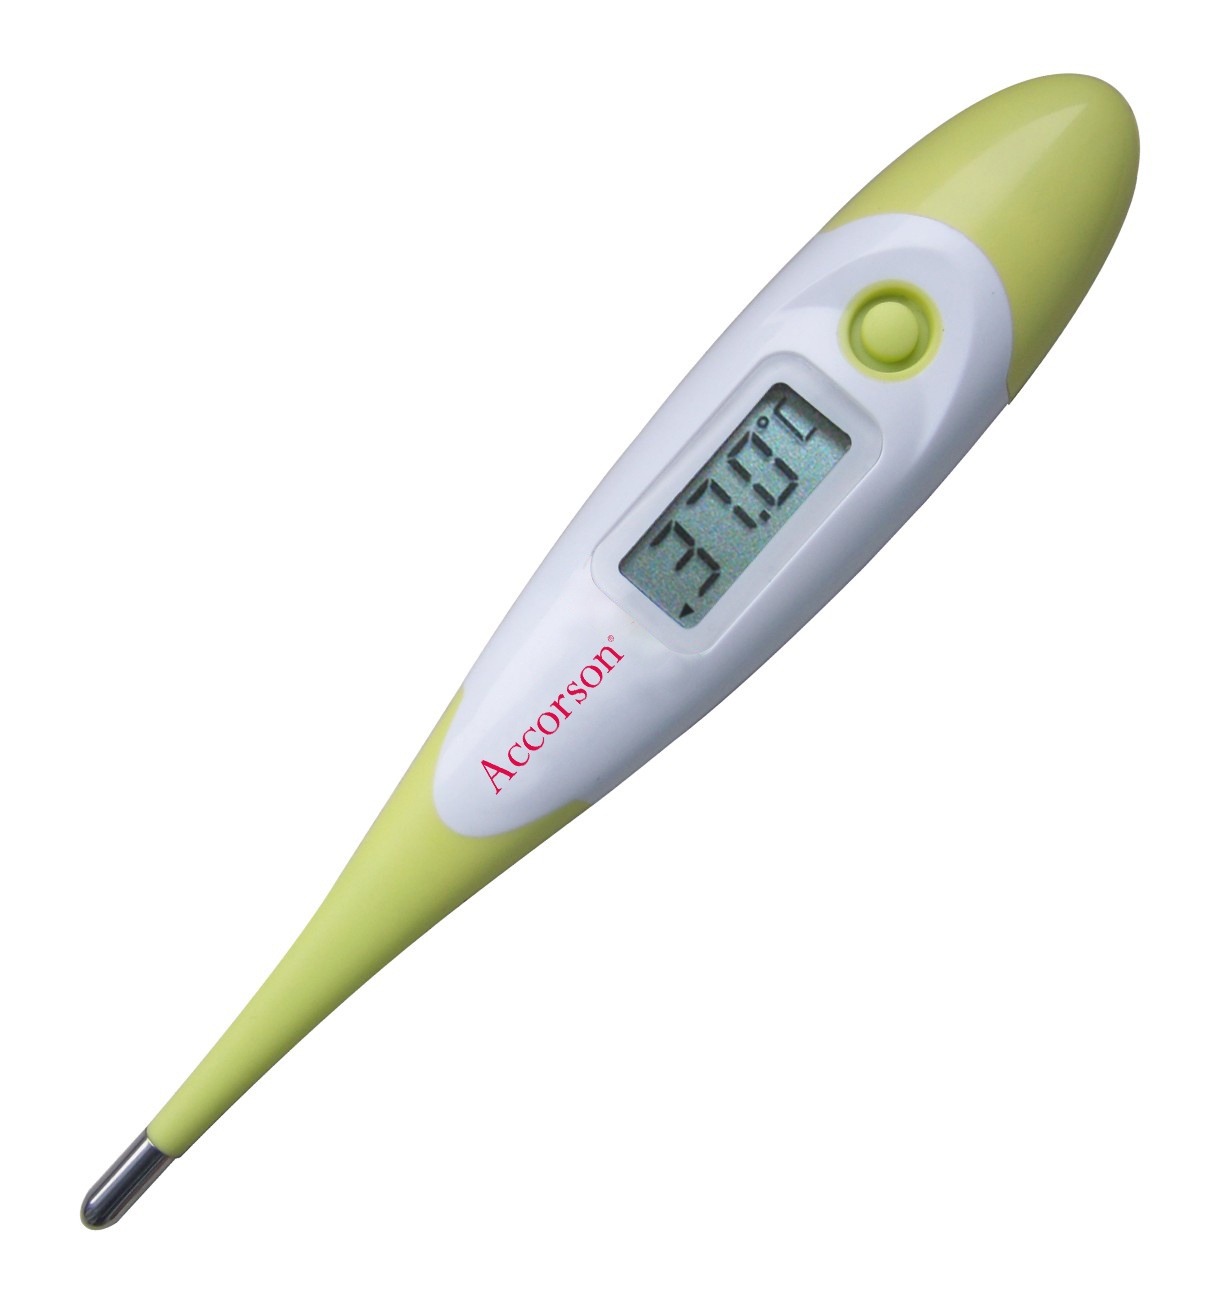 Digital Thermometer MT-4320 – Accorson